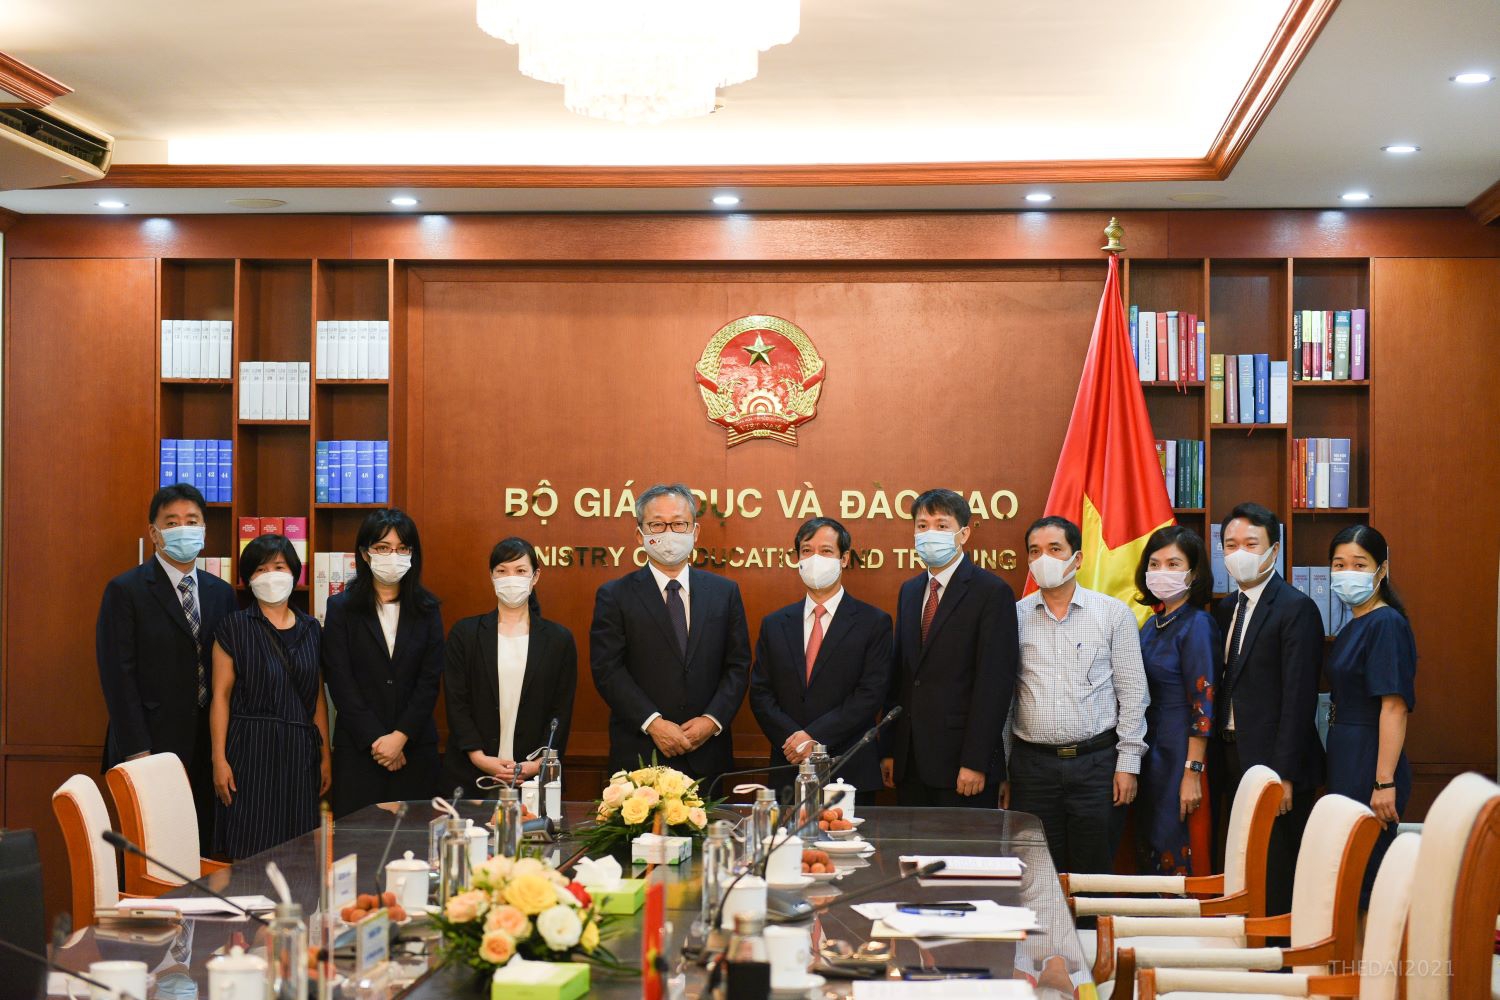 Bộ trưởng Nguyễn Kim Sơn tiếp xã giao Đại sứ Nhật Bản tại Việt Nam - Ảnh minh hoạ 2